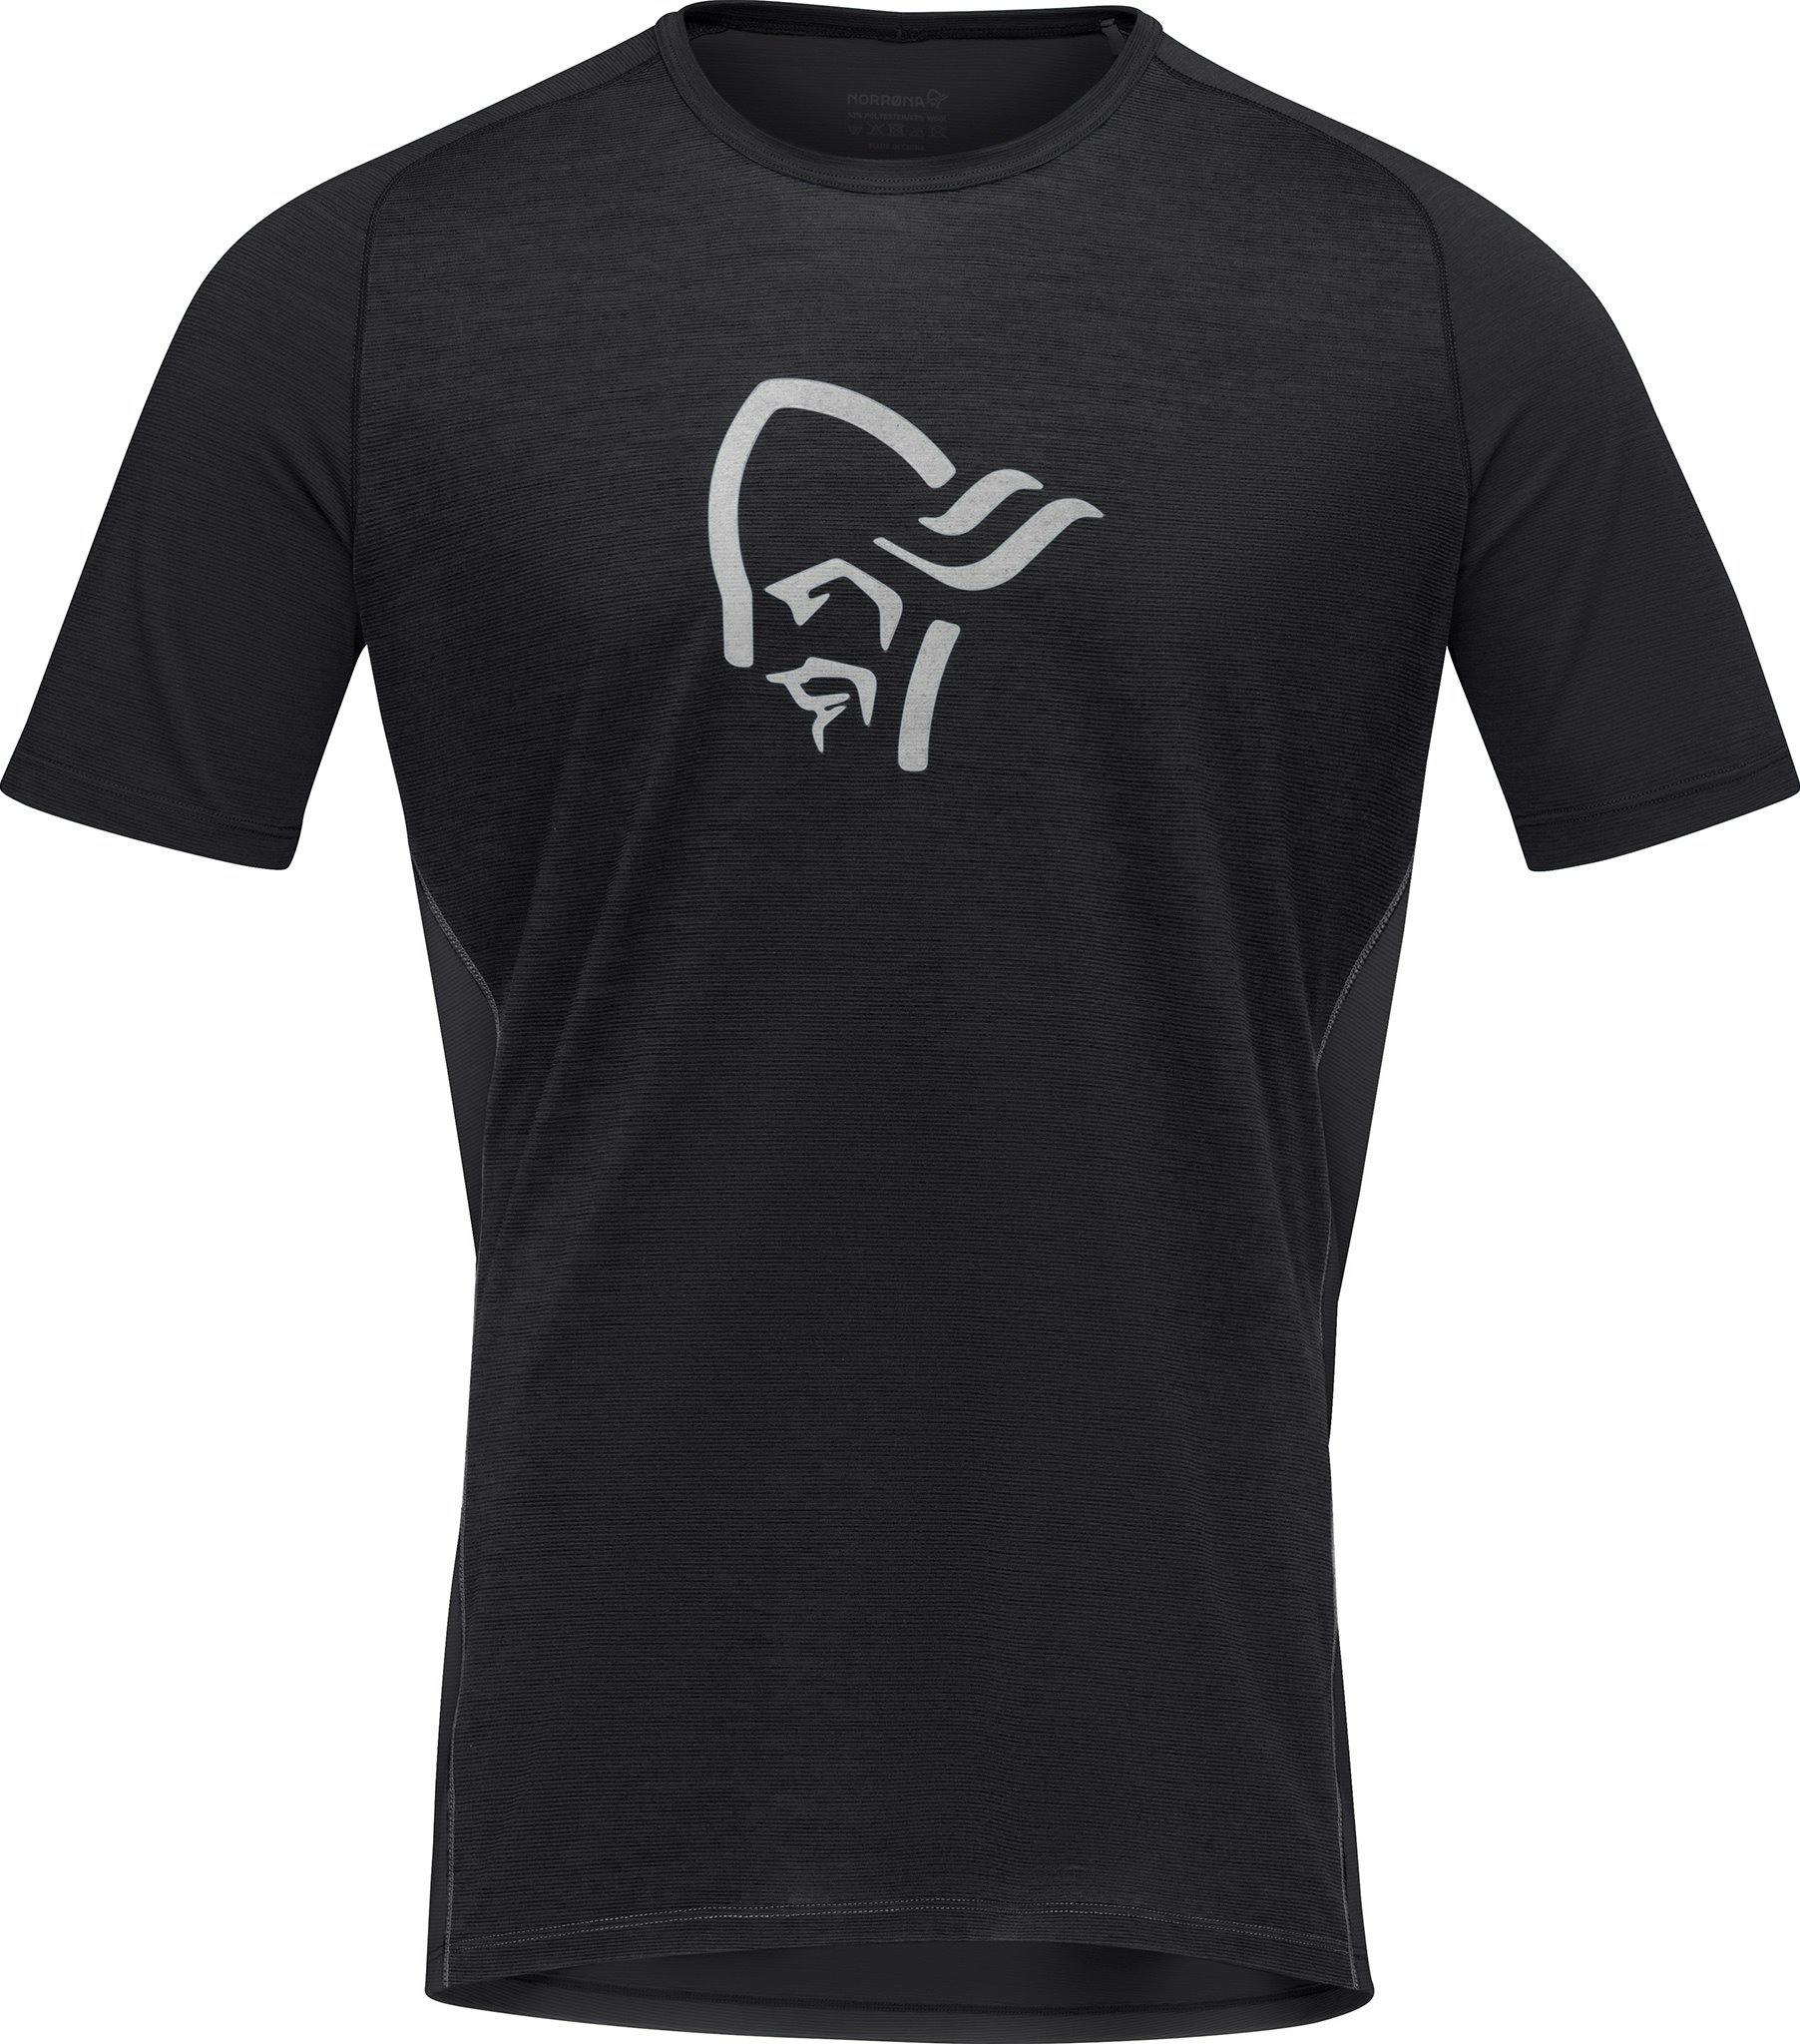 Product image for Fjørå Wool T-Shirt - Men's